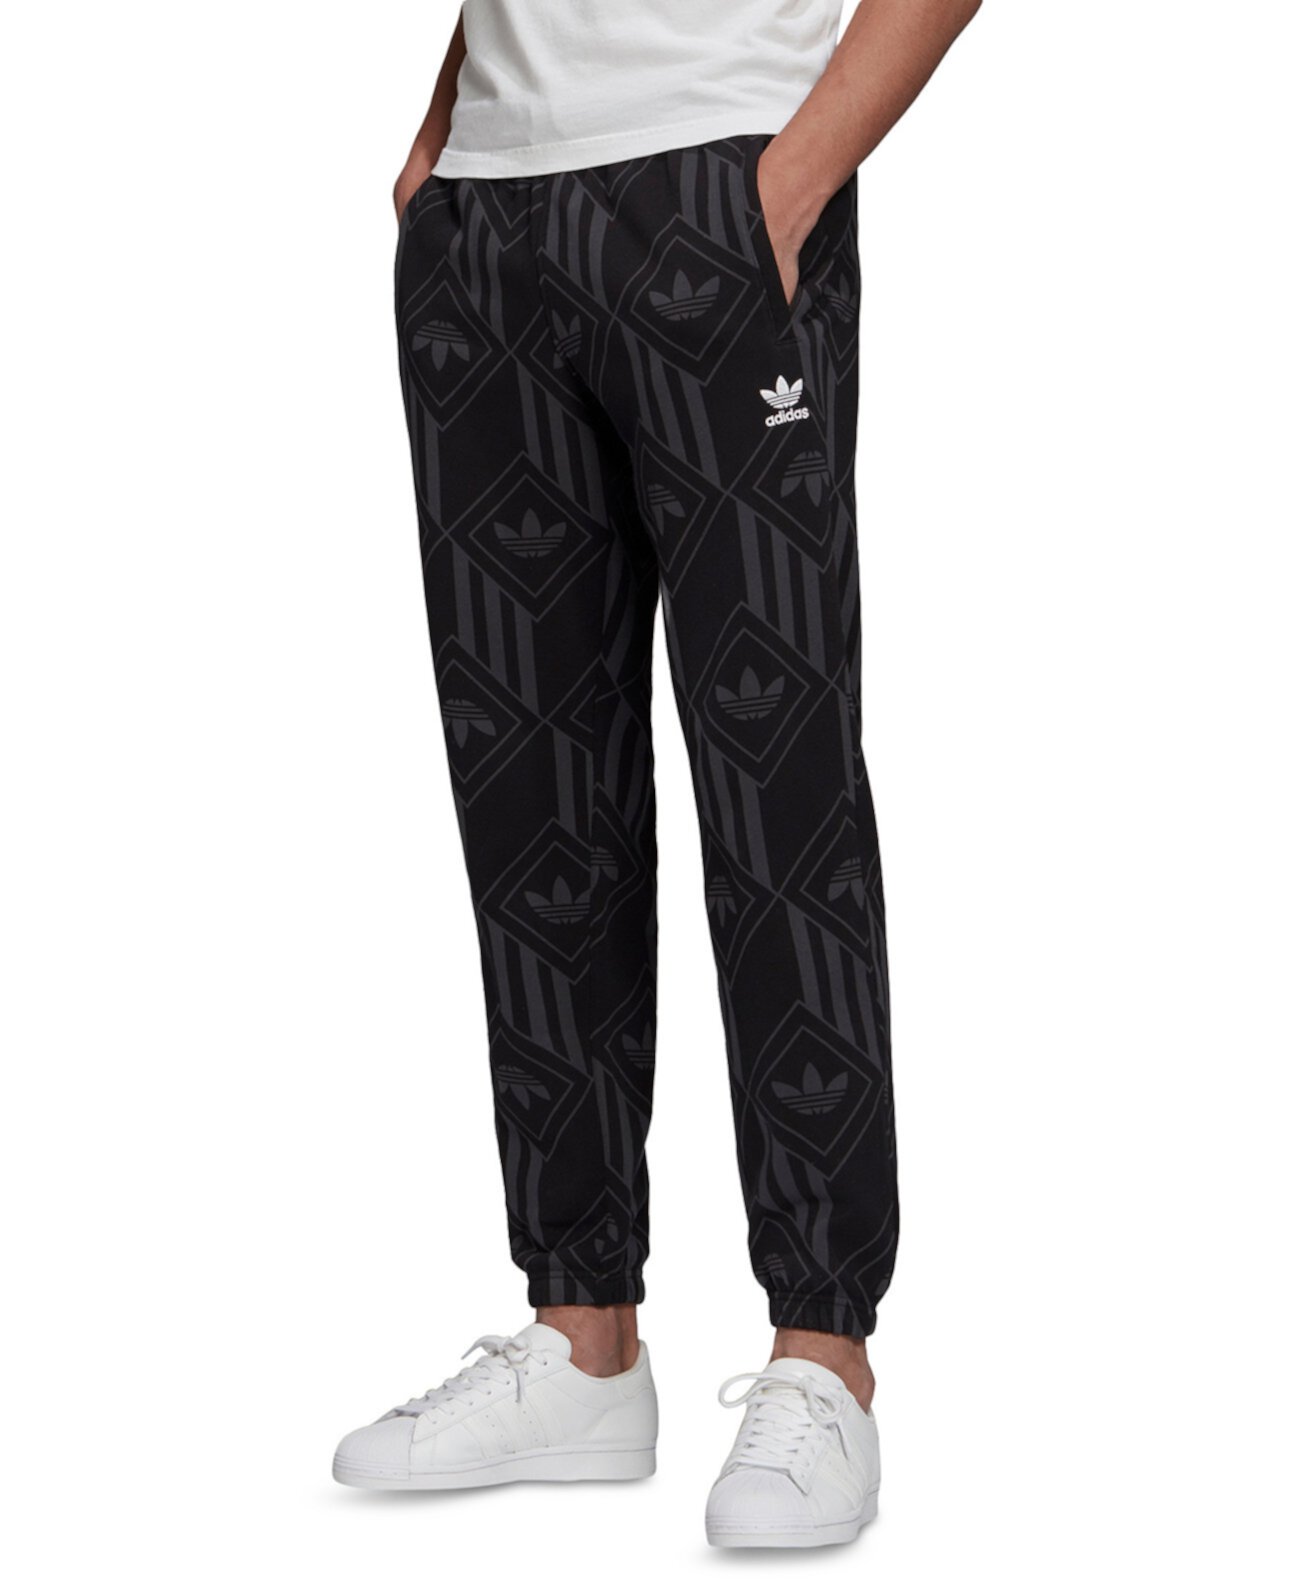 Мужские спортивные штаны с монограммой Originals Adidas